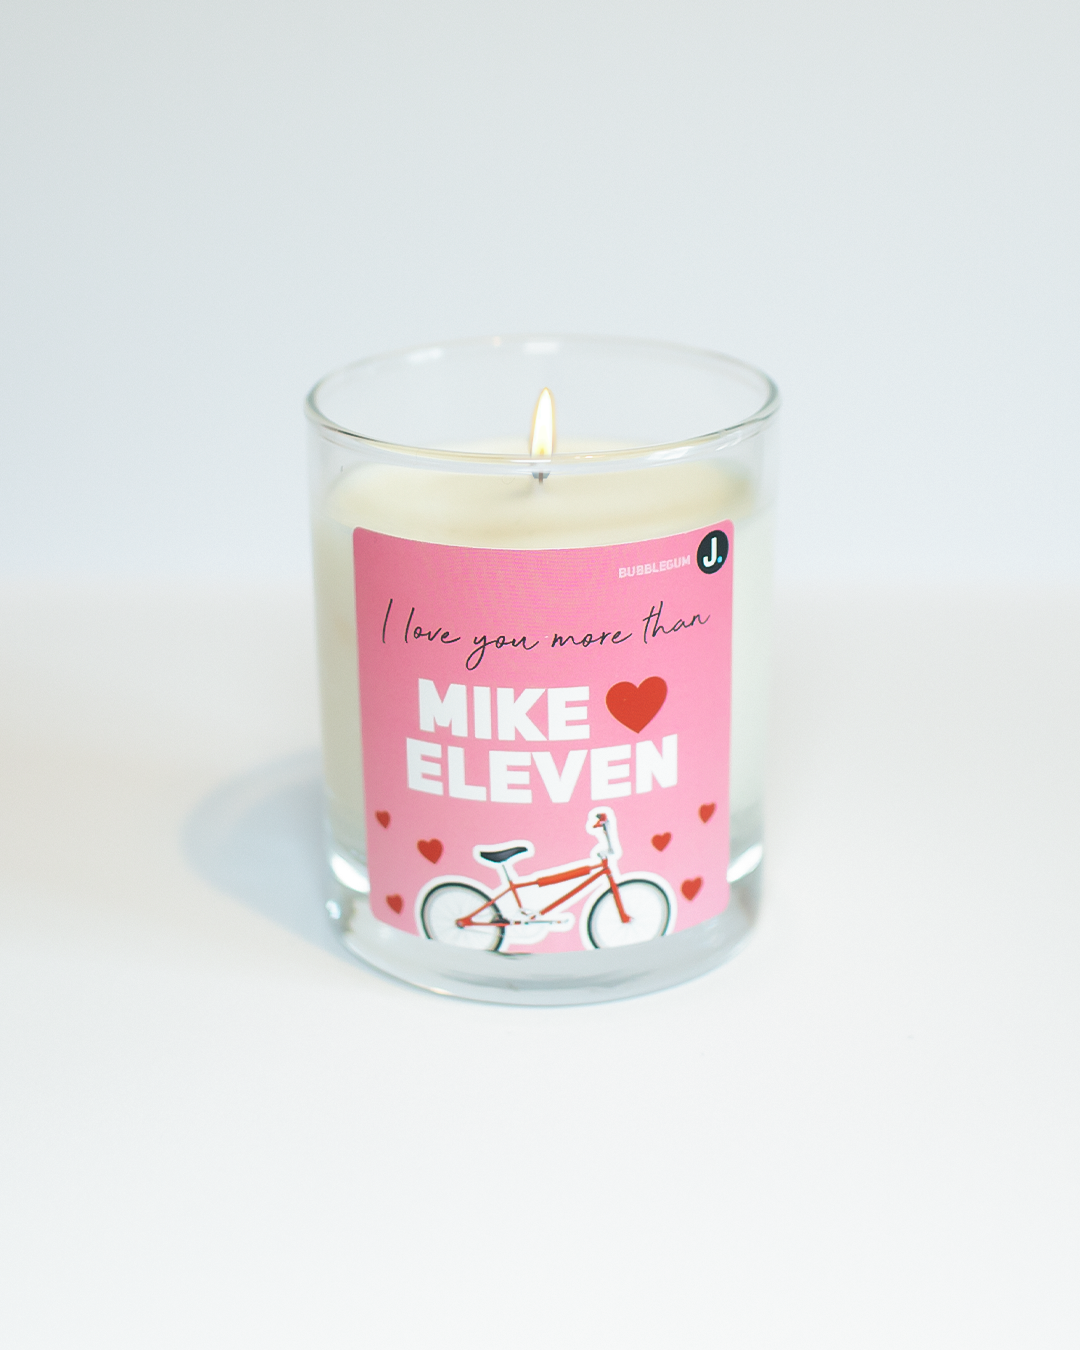 Mike & Eleven (Bubblegum) Stranger Things Inspired Candle - Stranger Things Inspired Candle